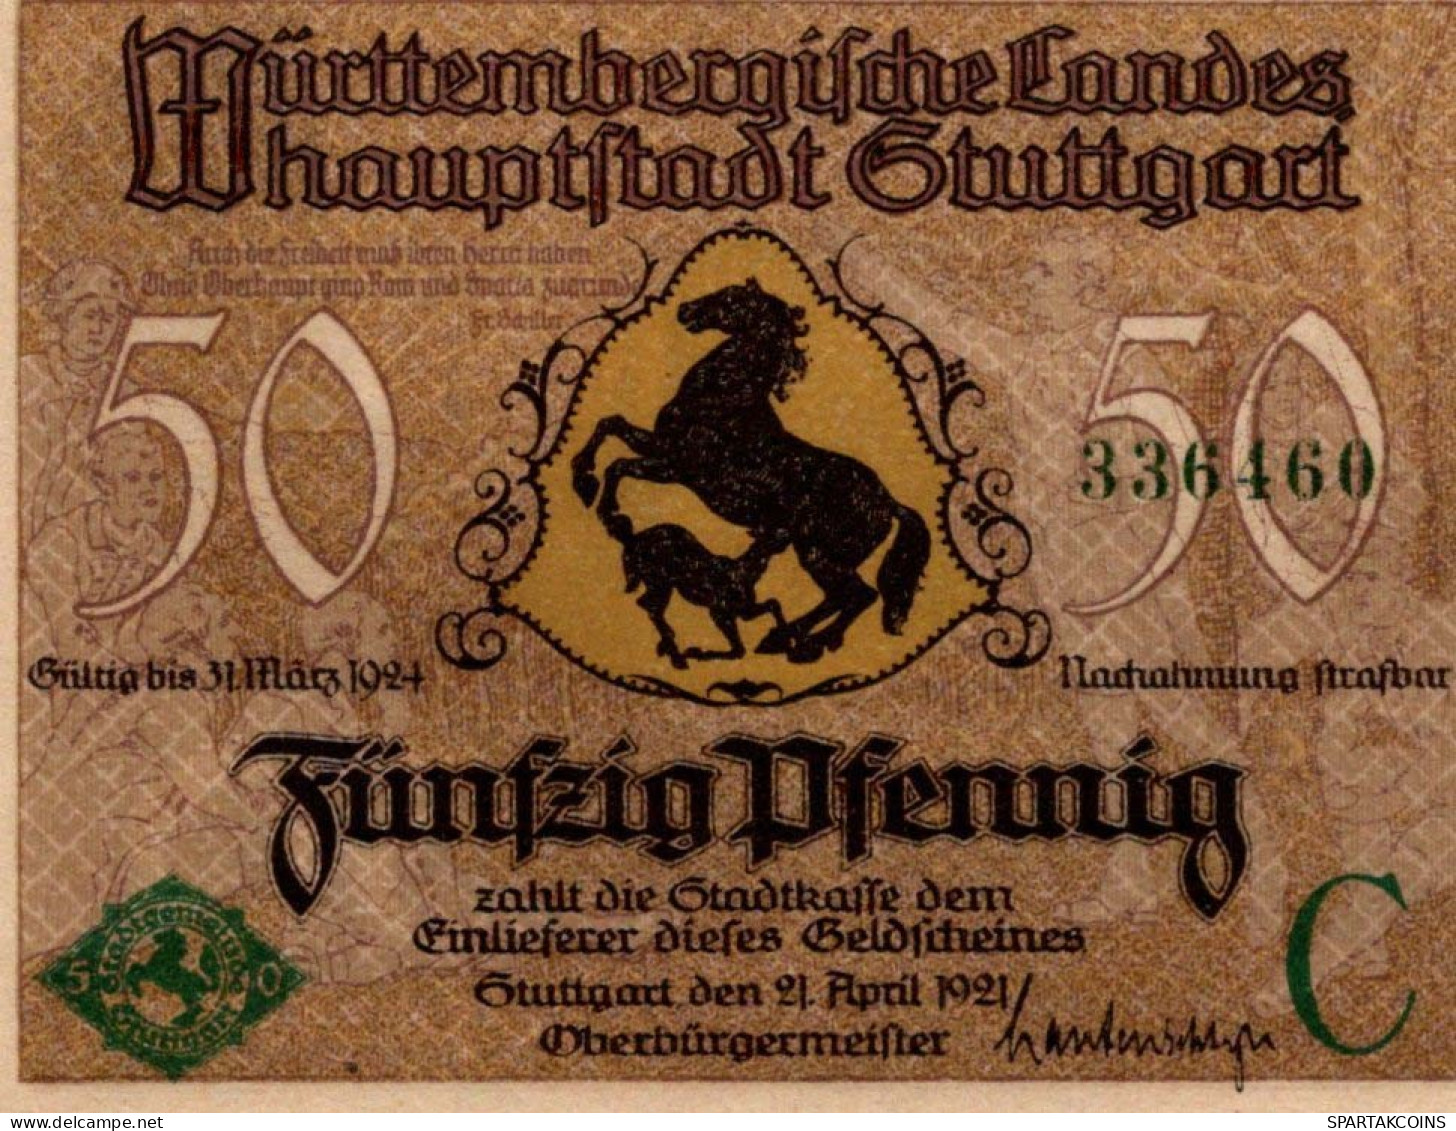 50 PFENNIG 1921 Stadt STUTTGART Württemberg UNC DEUTSCHLAND Notgeld #PC415 - [11] Lokale Uitgaven